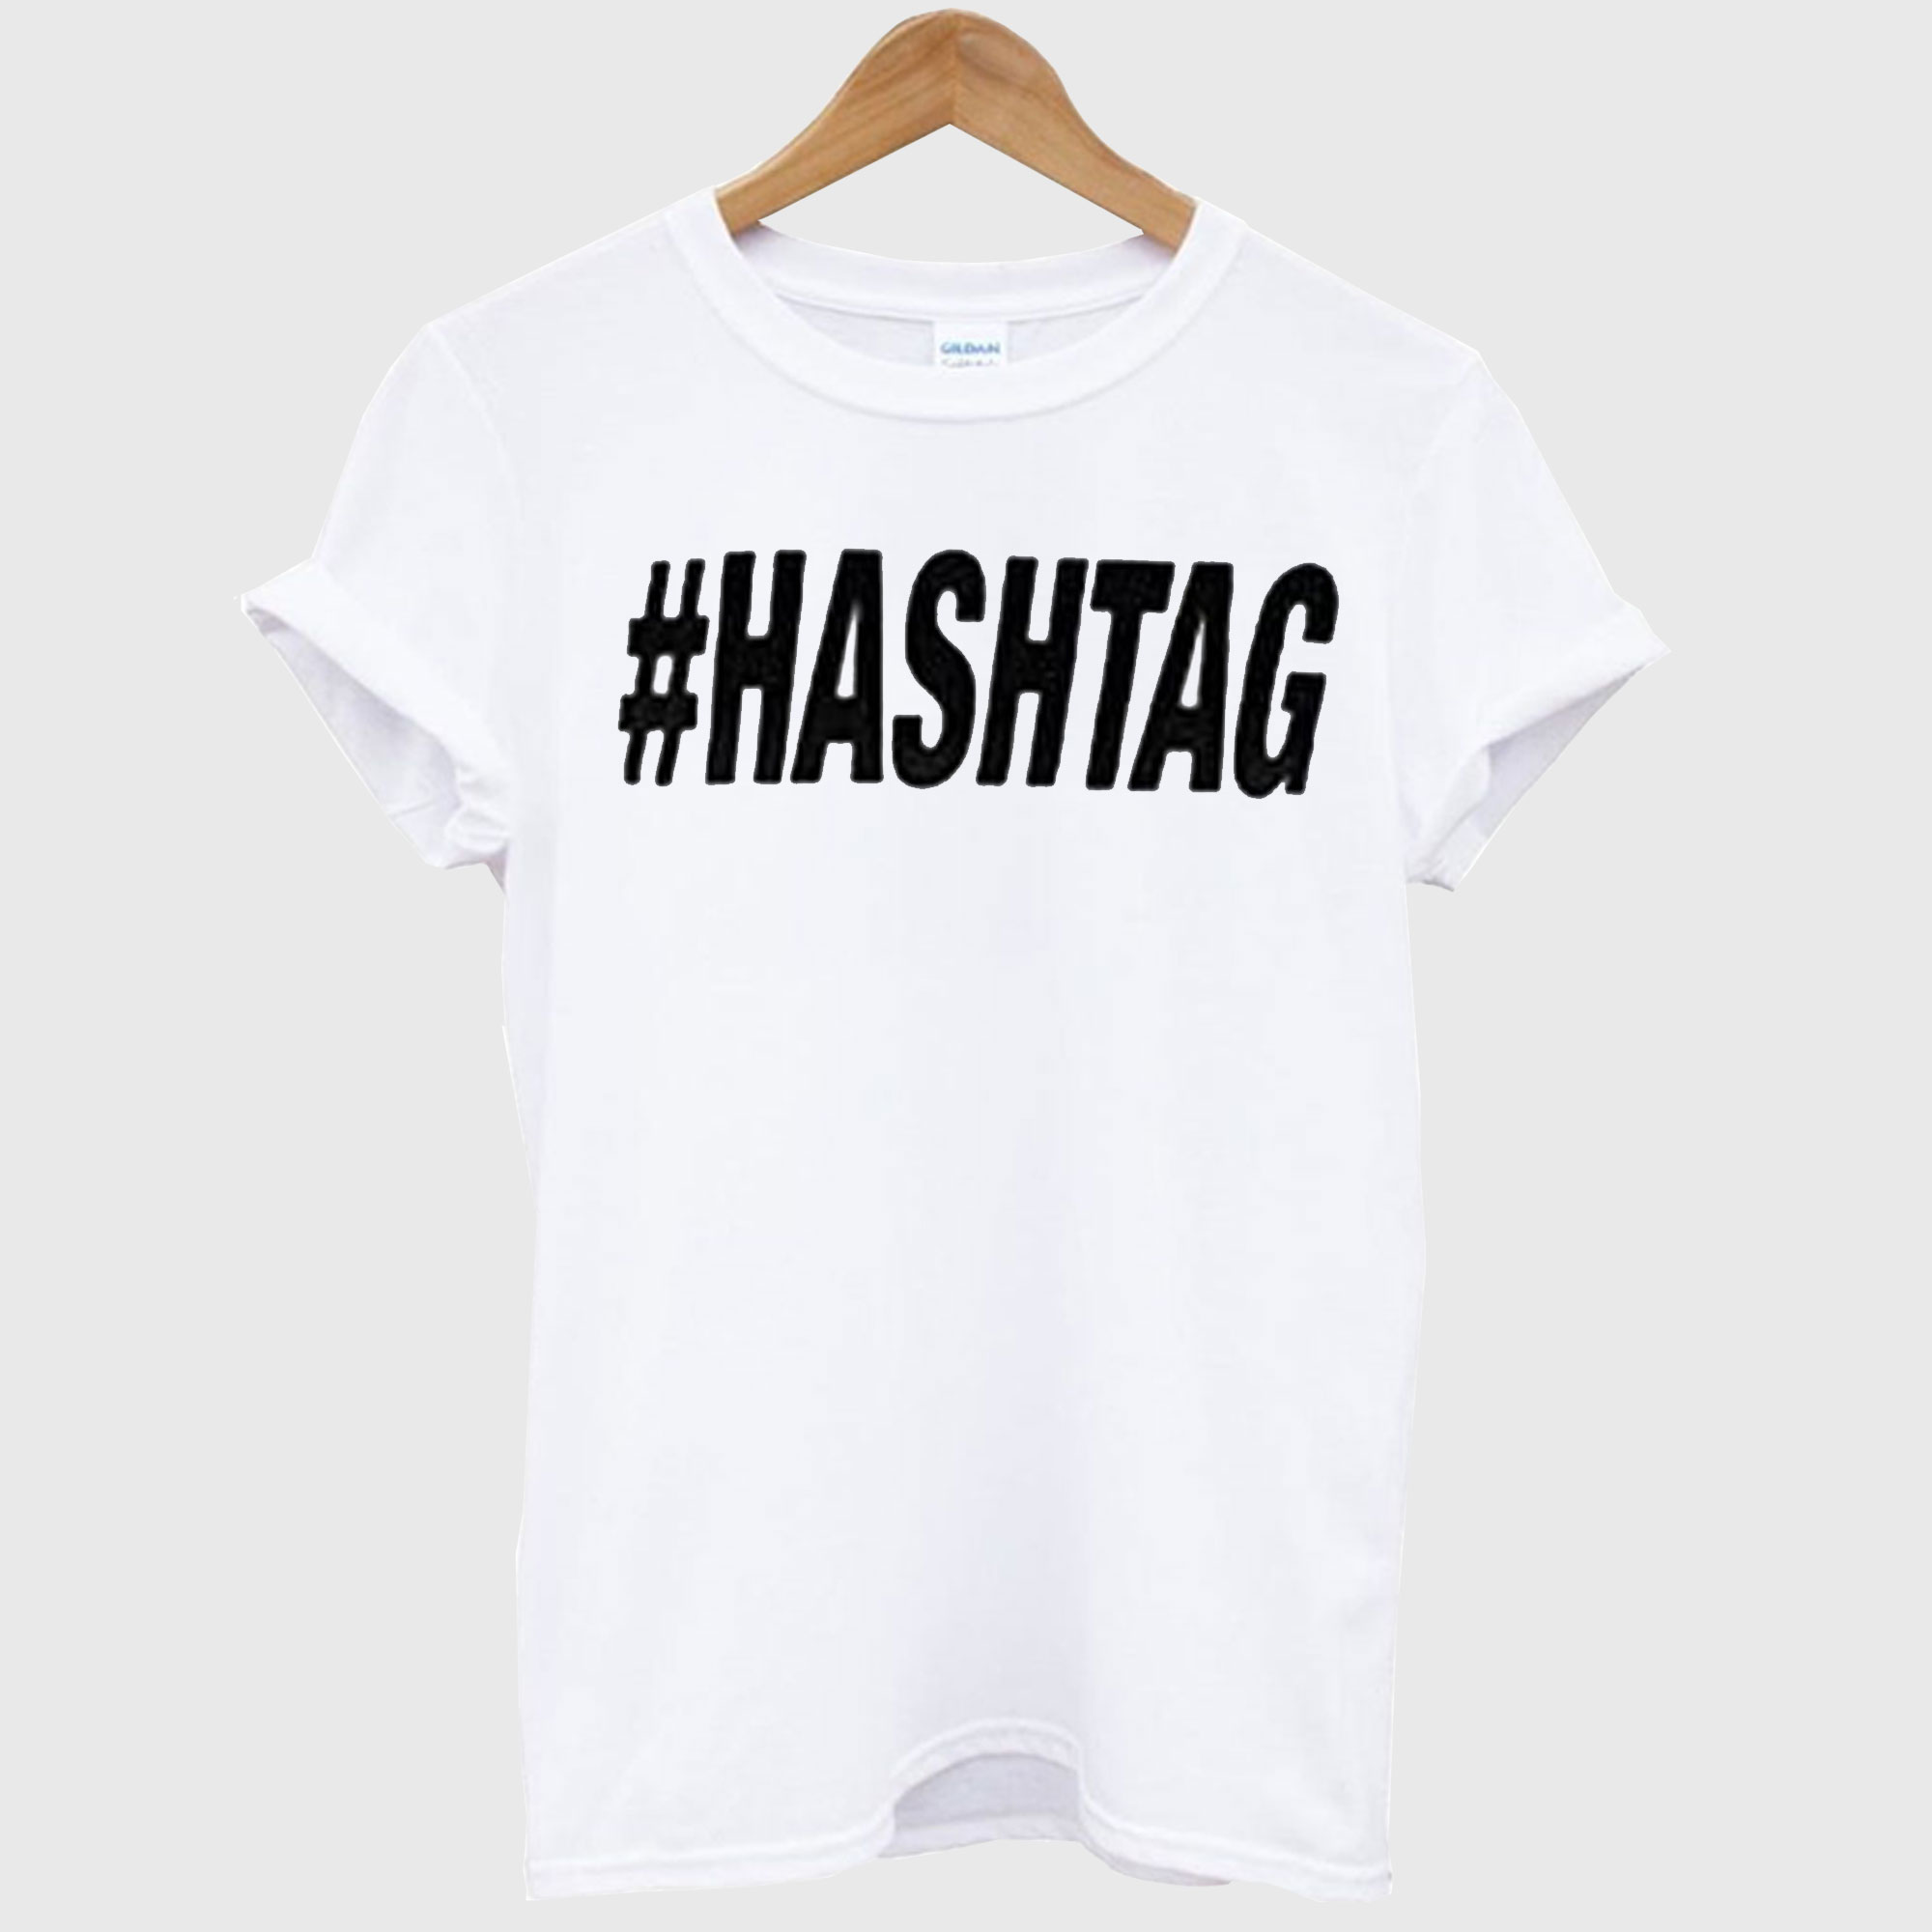 #hashtag tshirt